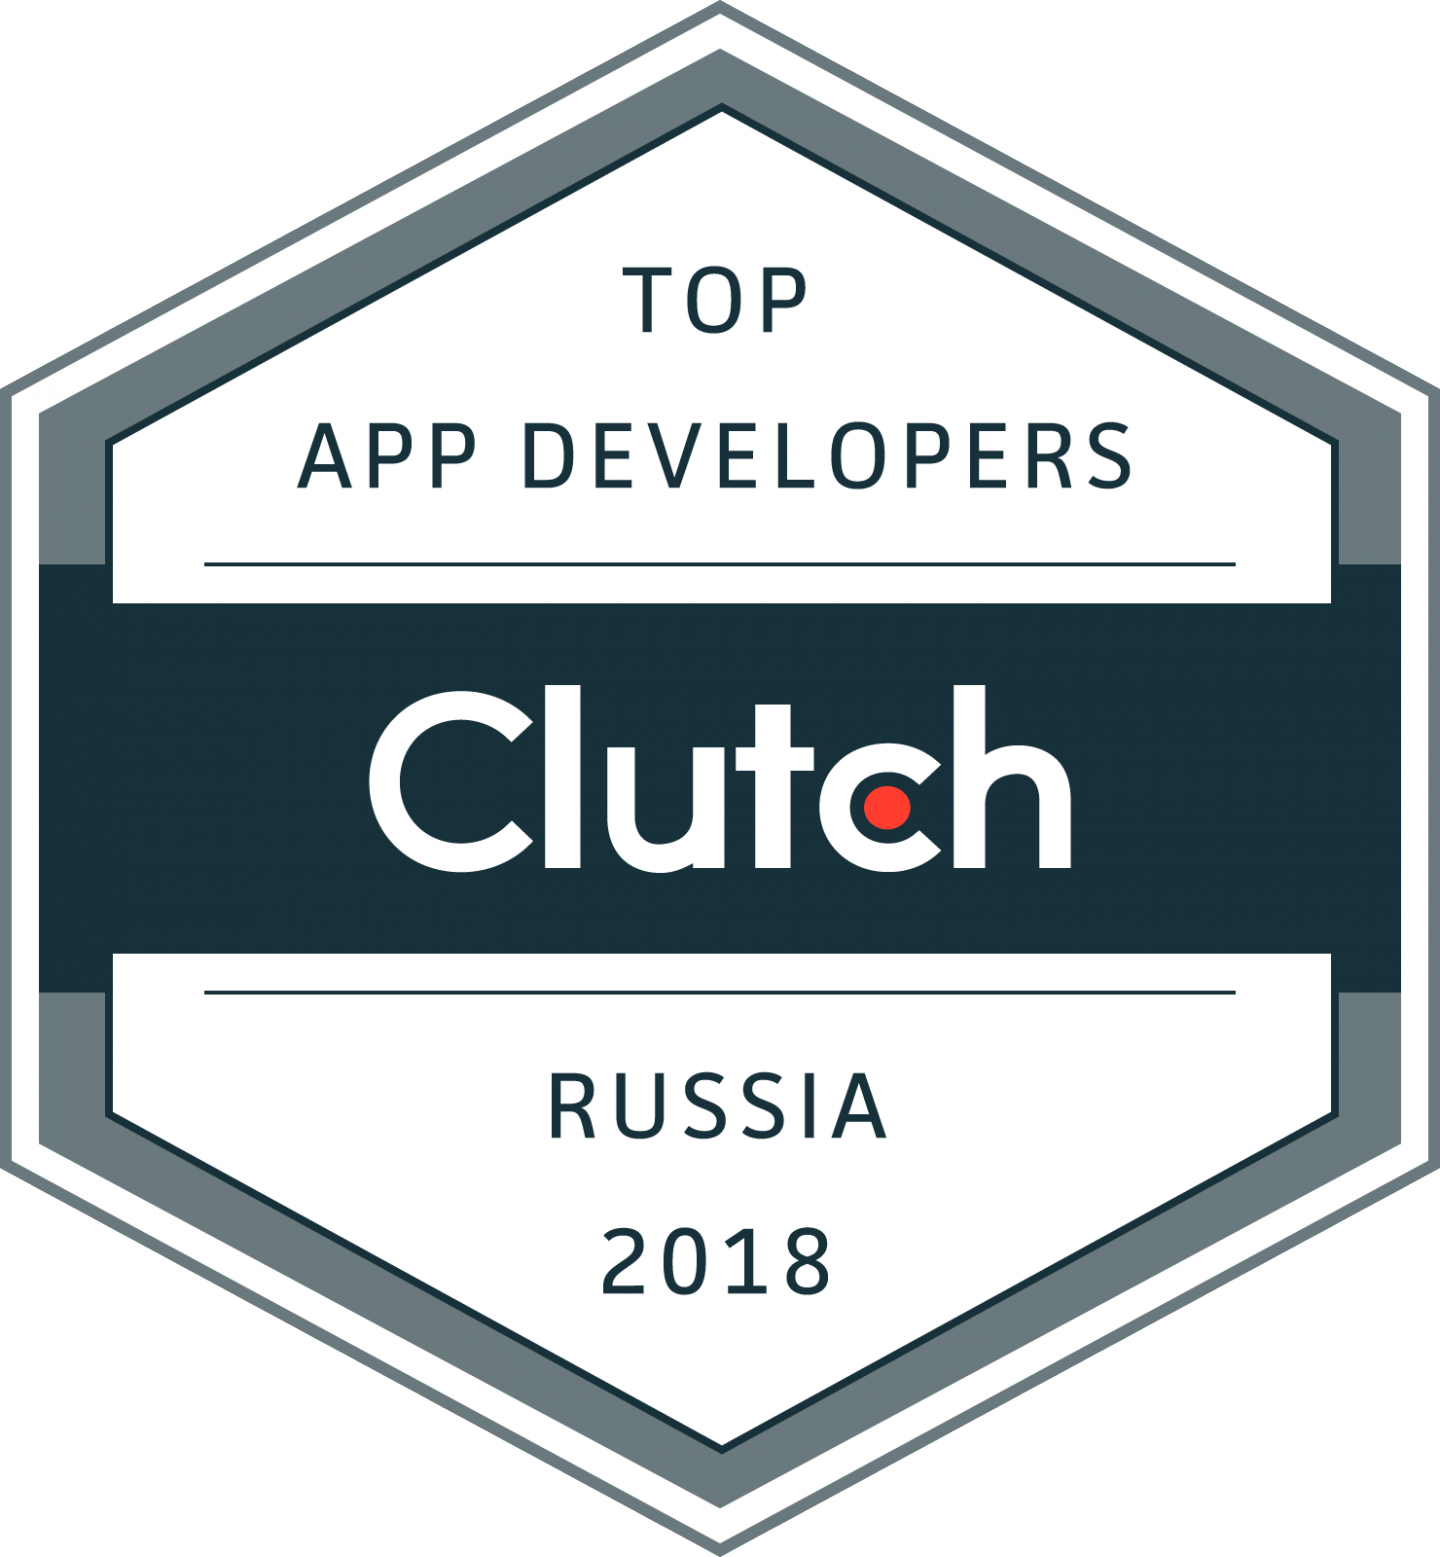 Top app developers 2018